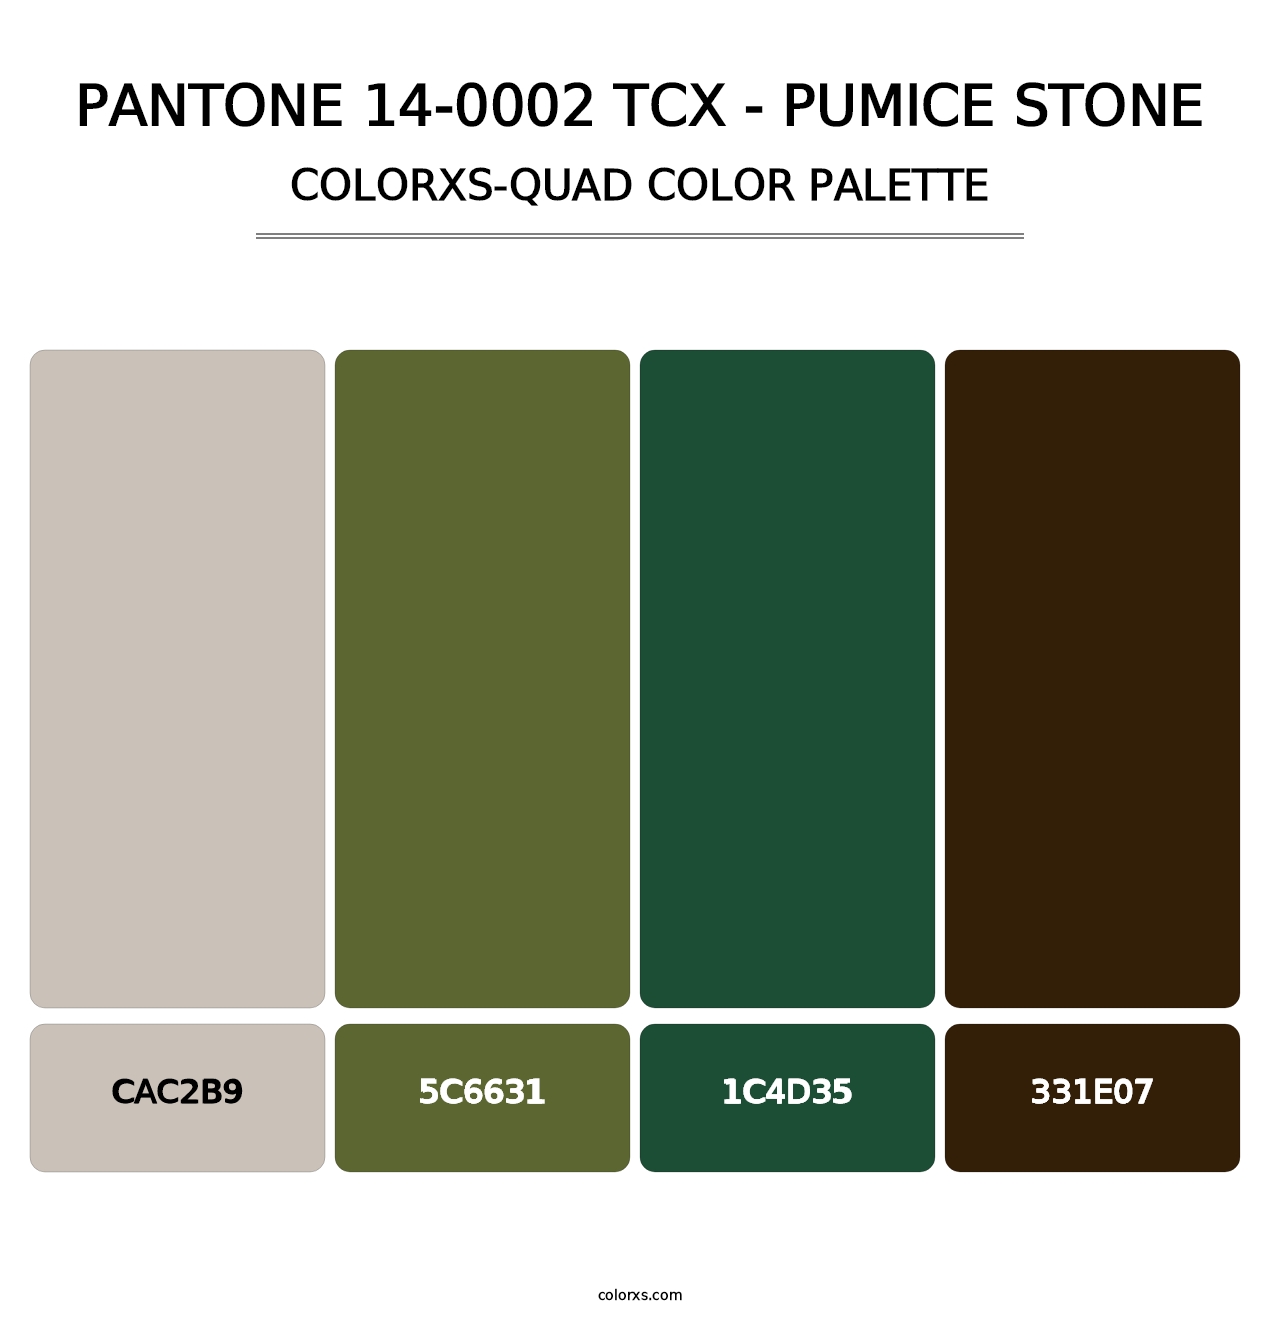 PANTONE 14-0002 TCX - Pumice Stone - Colorxs Quad Palette